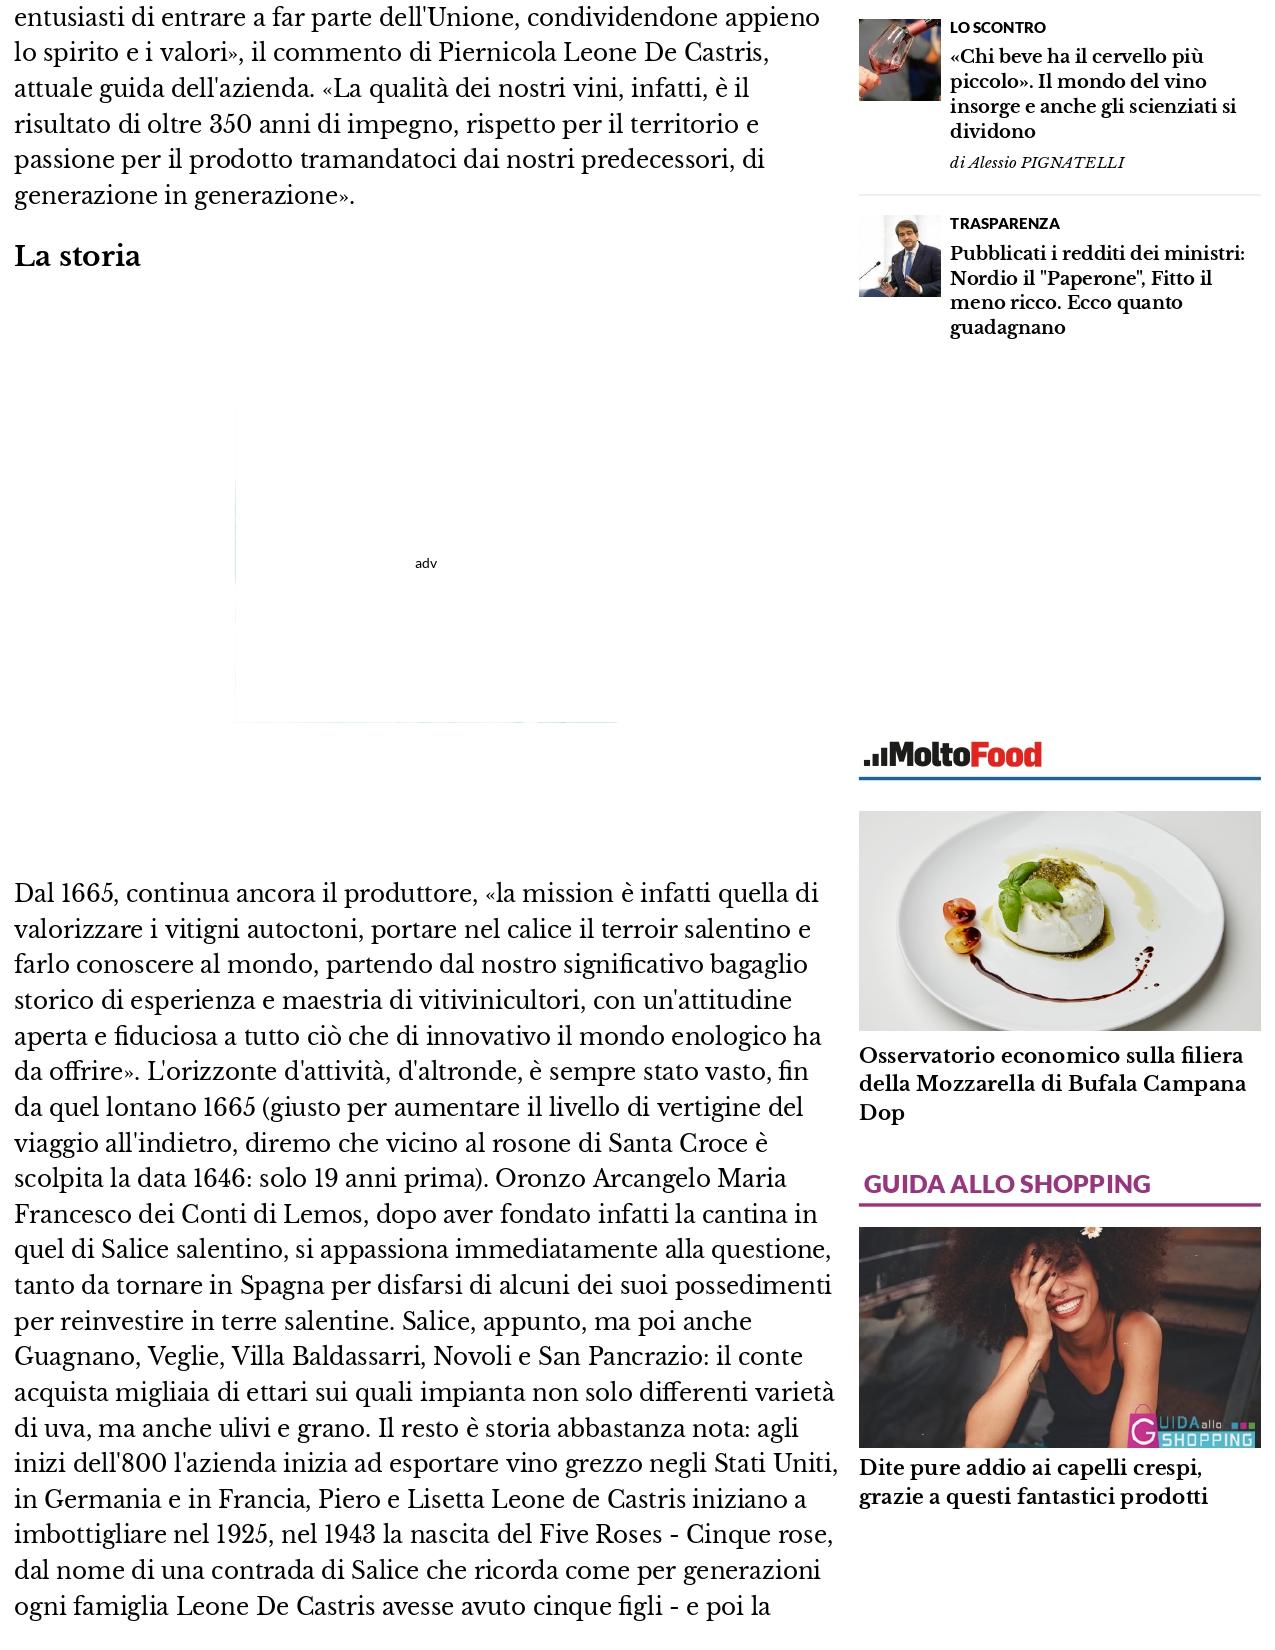 Il Nuovo Quotidiano di Puglia Una storia lunga 358 anni Leone de Castris nellolimpo delle imprese centenarie 24 febbraio 2022 1 page 0003